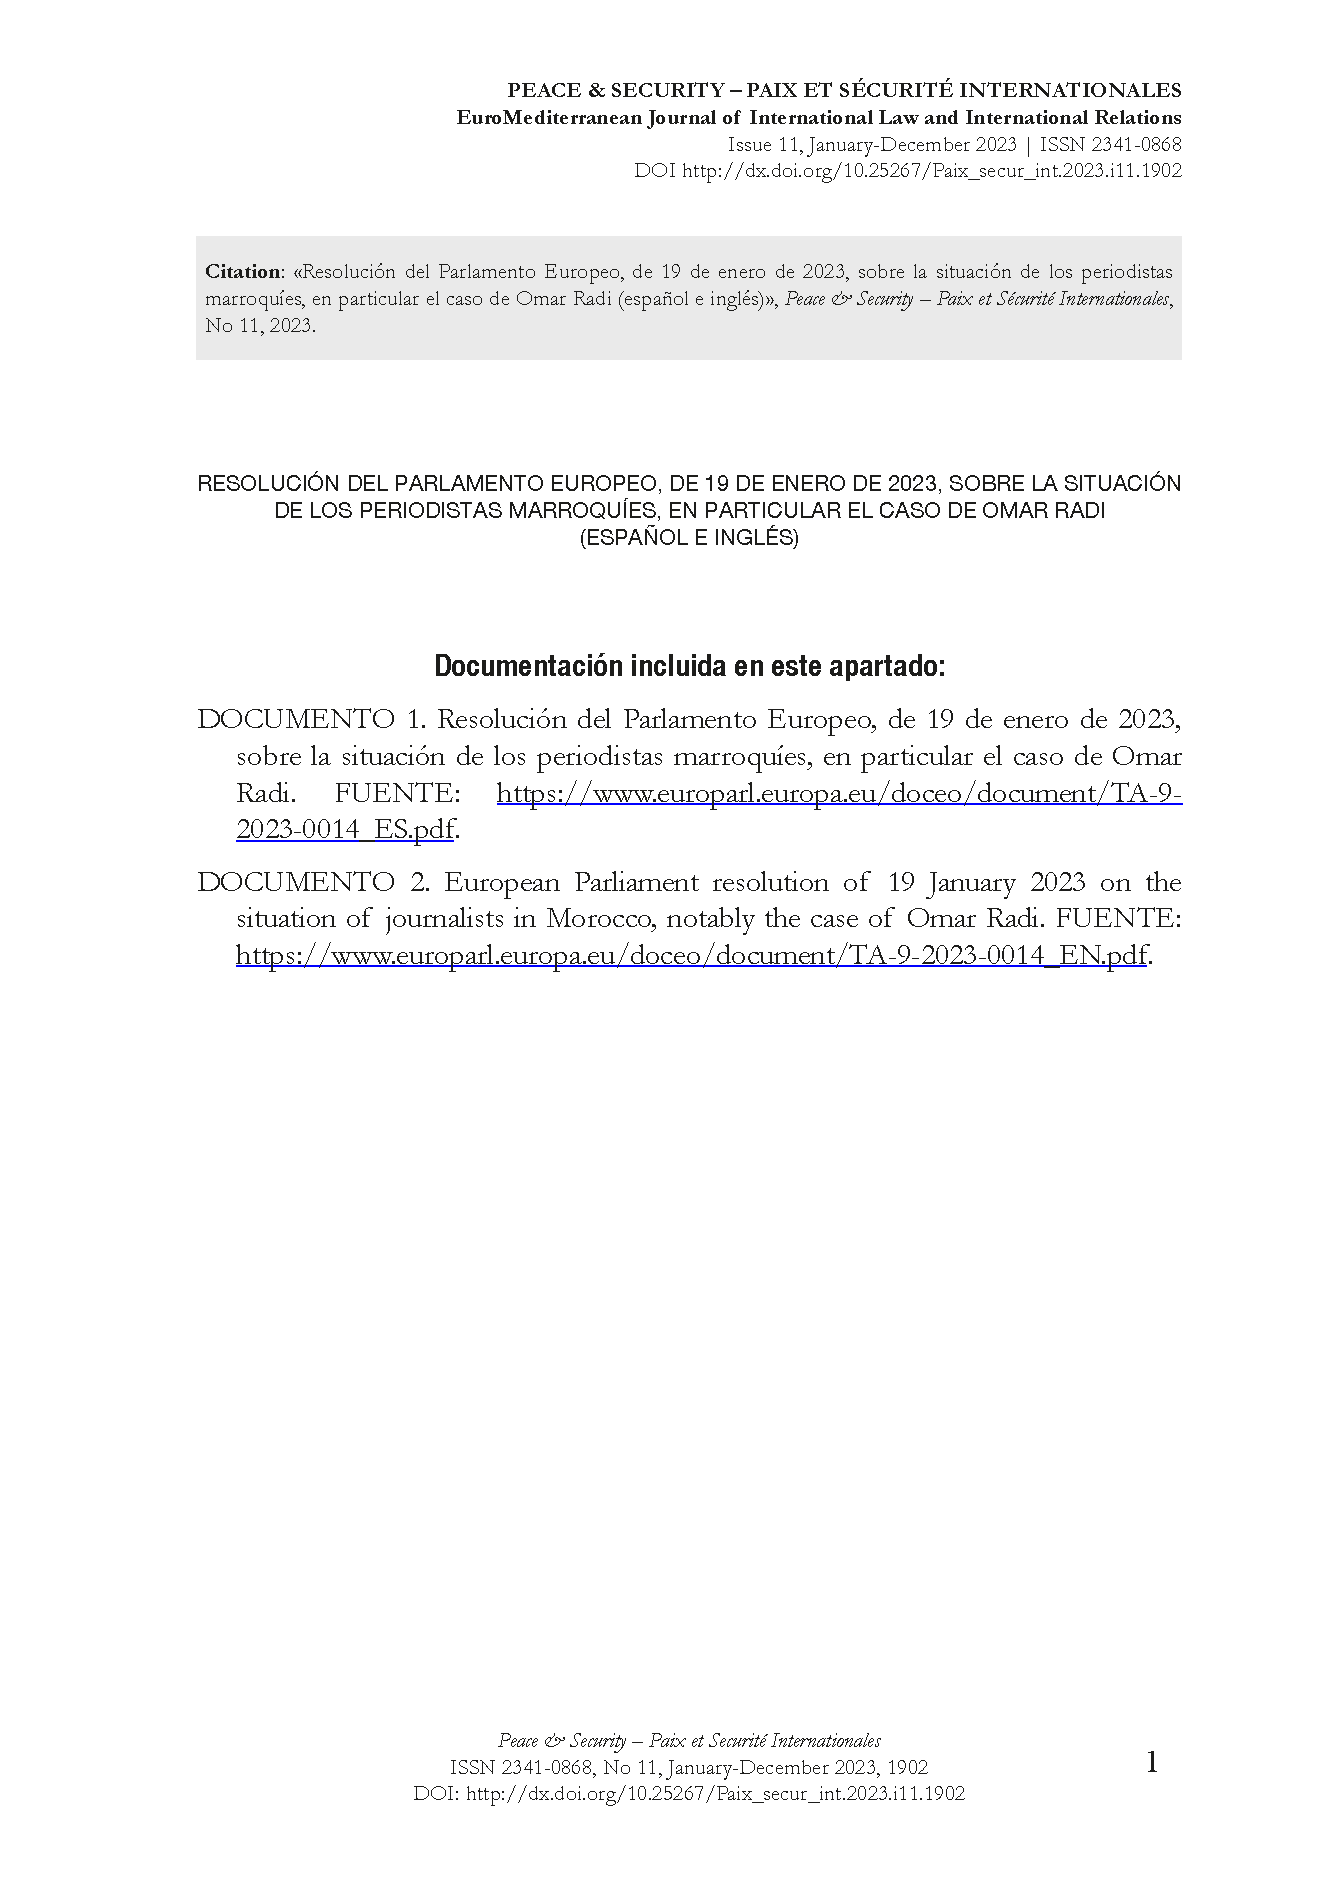 Resolución del Parlamento Europeo, de 19 de enero de 2023, sobre la situación de los periodistas marroquíes, en particular el caso de Omar Radi (español e inglés)